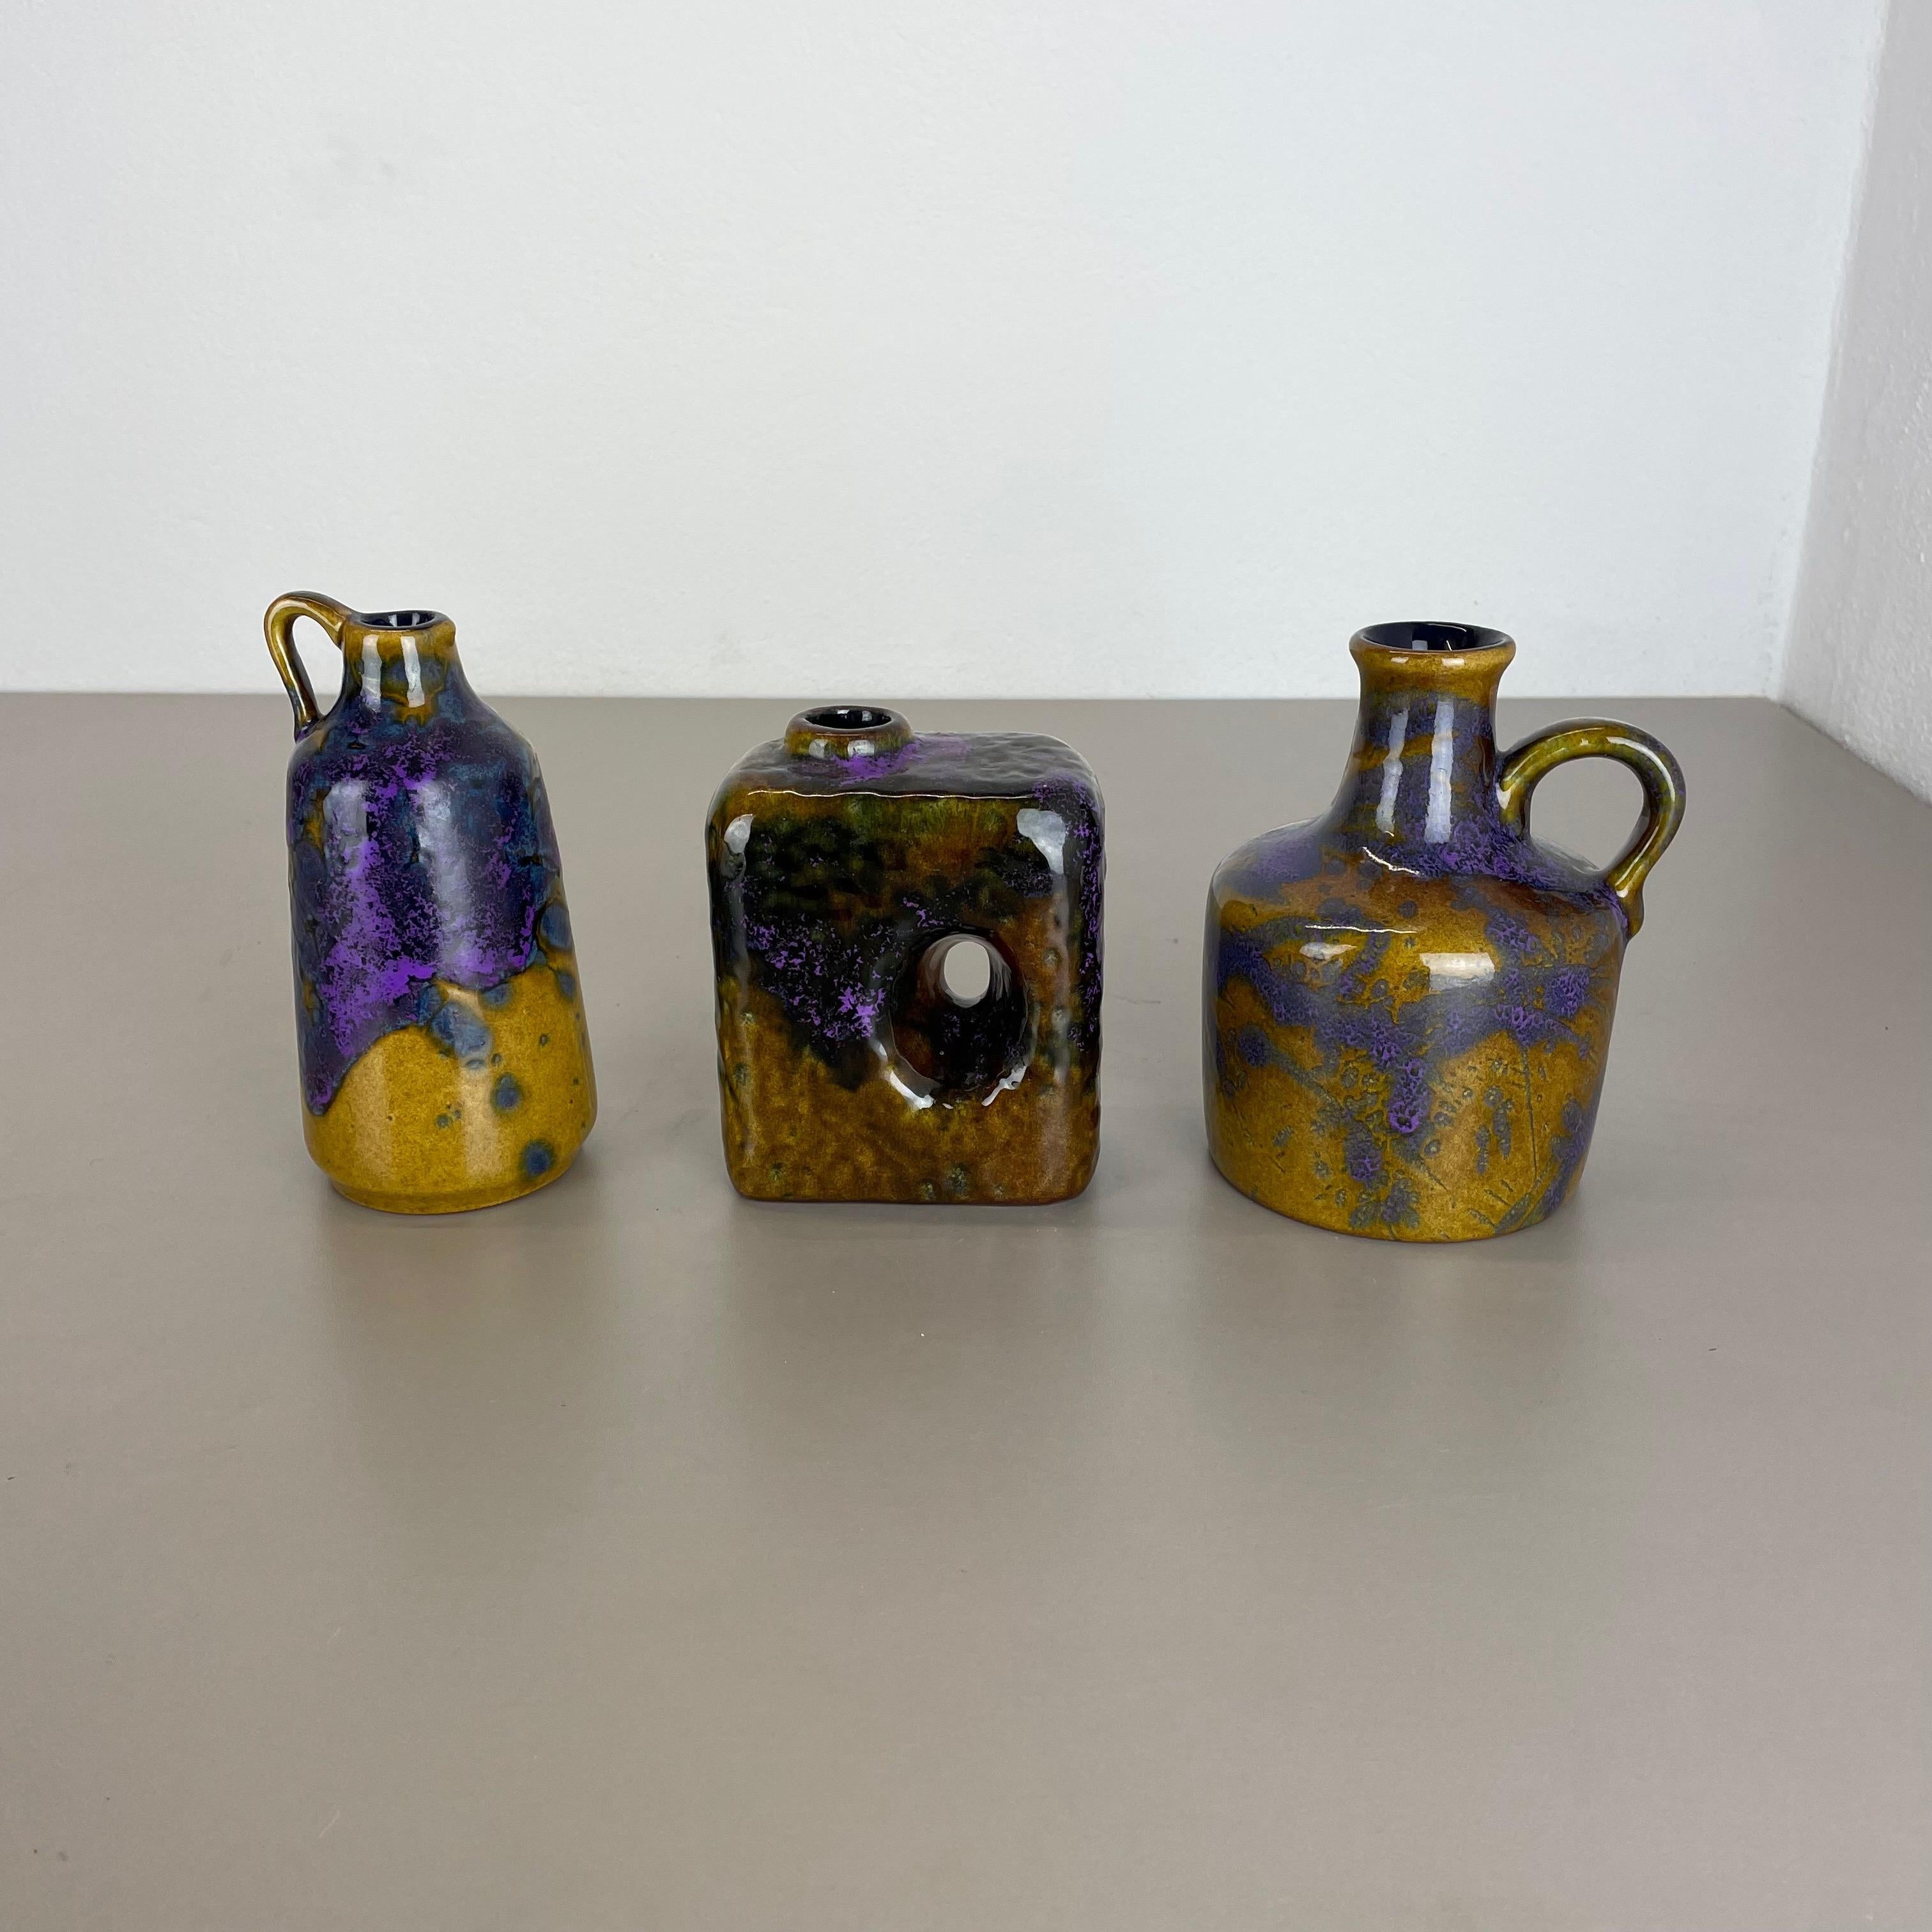 Artikel:

Keramische Vasen aus fetter Lava, 3 Stück


Produzent:

Marei Ceramics, Deutschland


Jahrzehnt:

1970s





Satz von 3 originalen Vintage Studio Pottery Vasen wurde in den 1970er Jahren von Marei Ceramics, Deutschland, hergestellt.